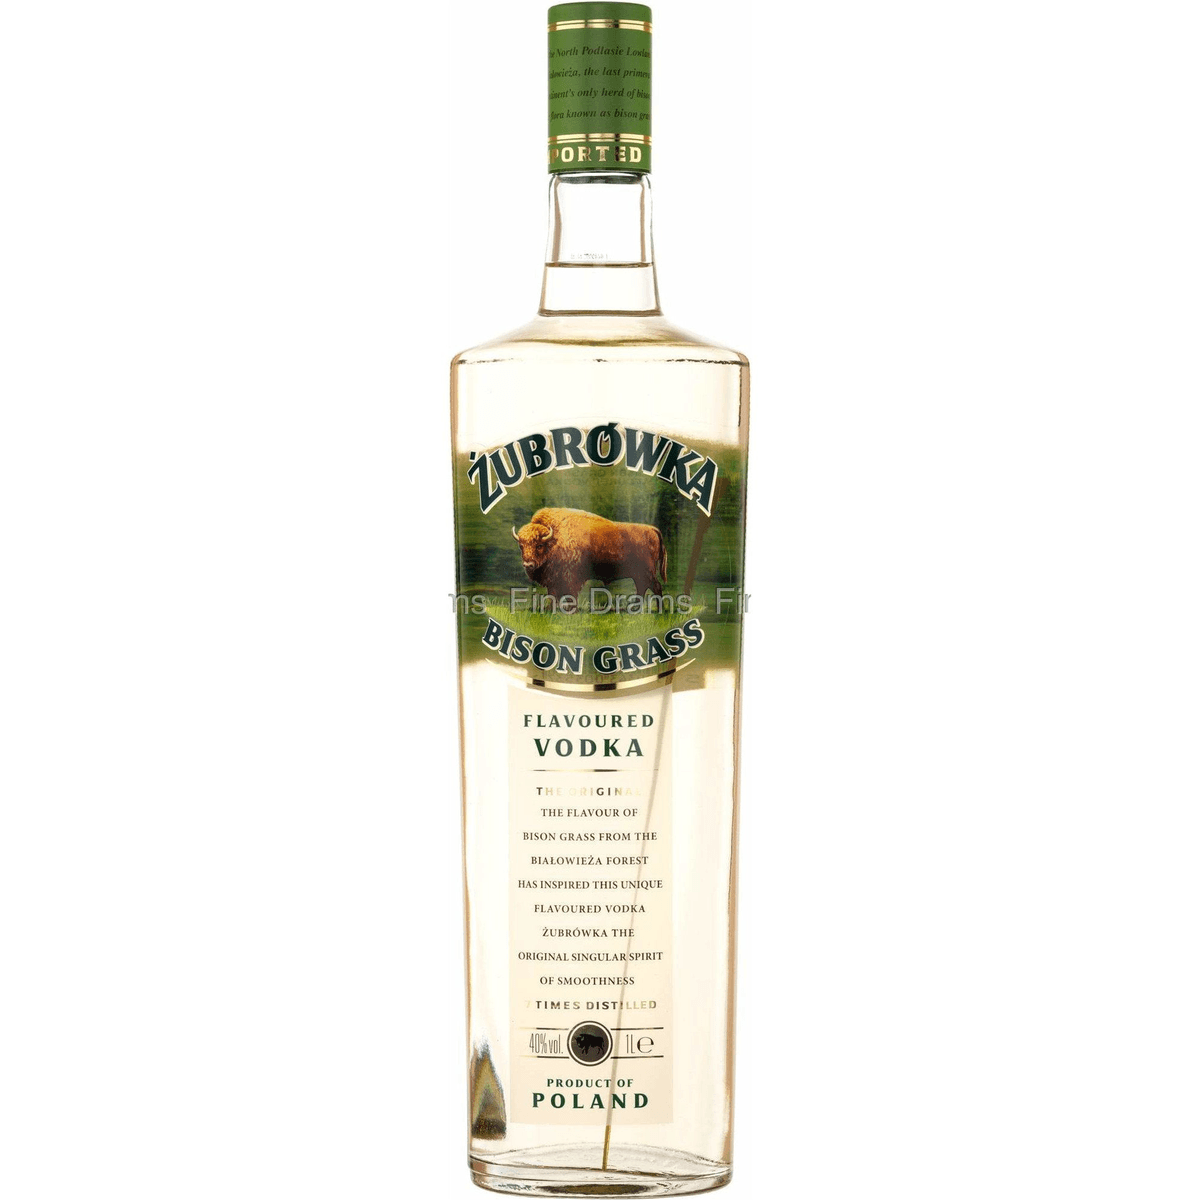 Flavoured Vol. Winebuyers Bison 1L Grass Vodka | 40% Zubrowka